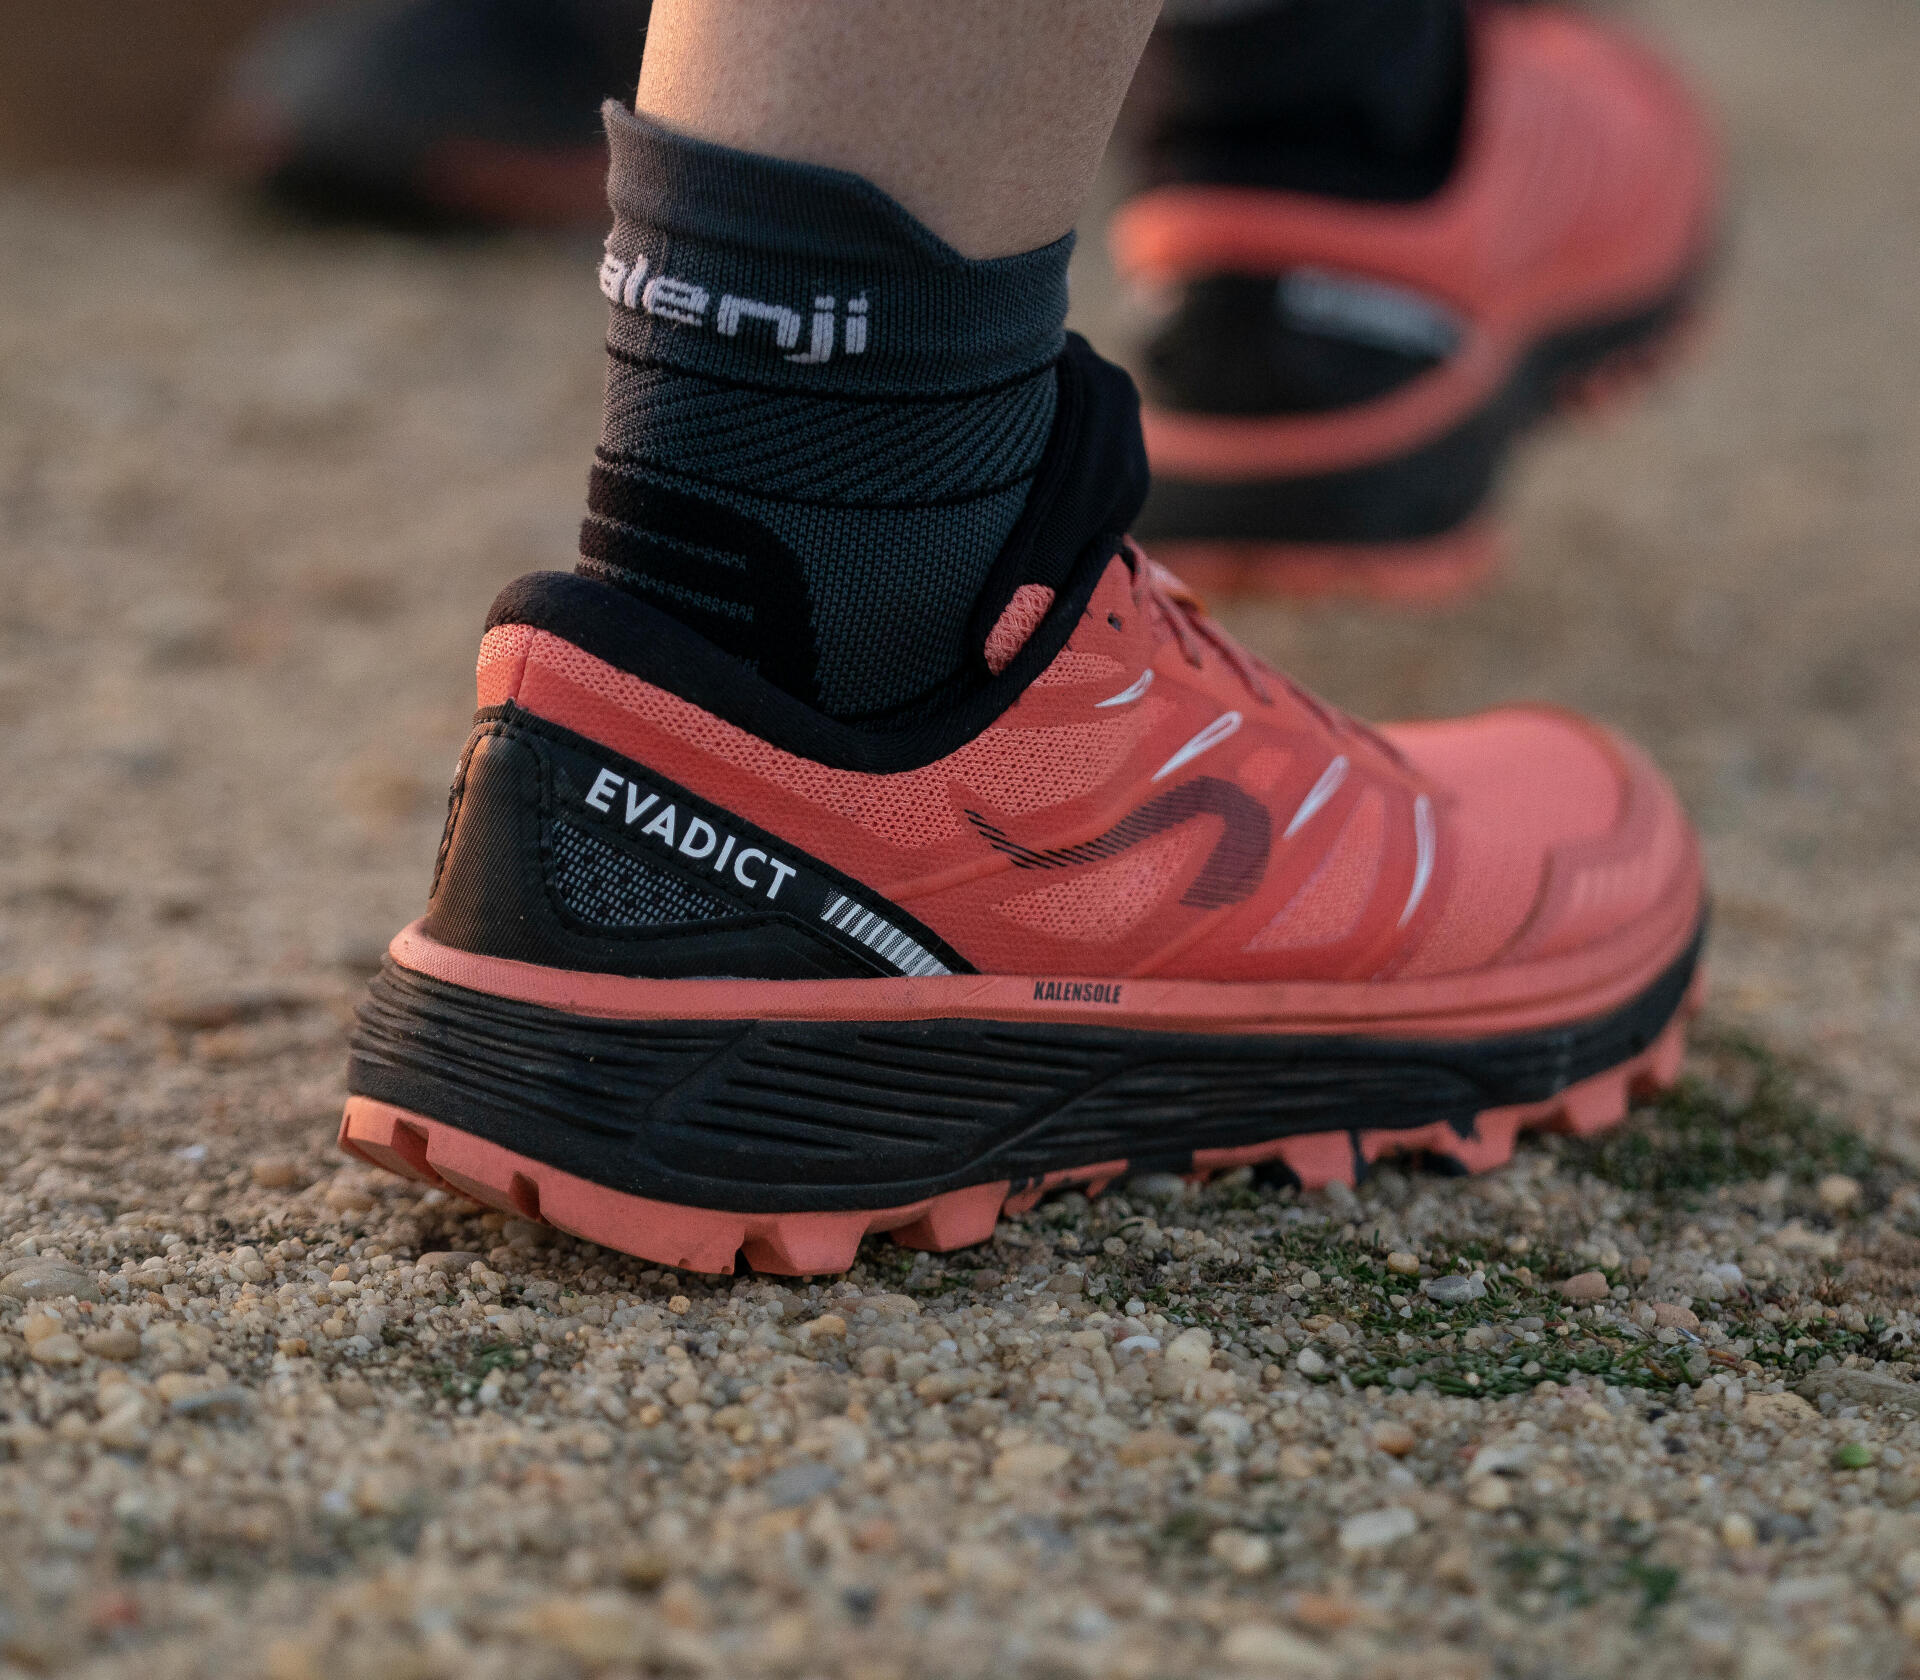 Les chaussures de trail ont de l'accroche, de la résistance et du maintien.